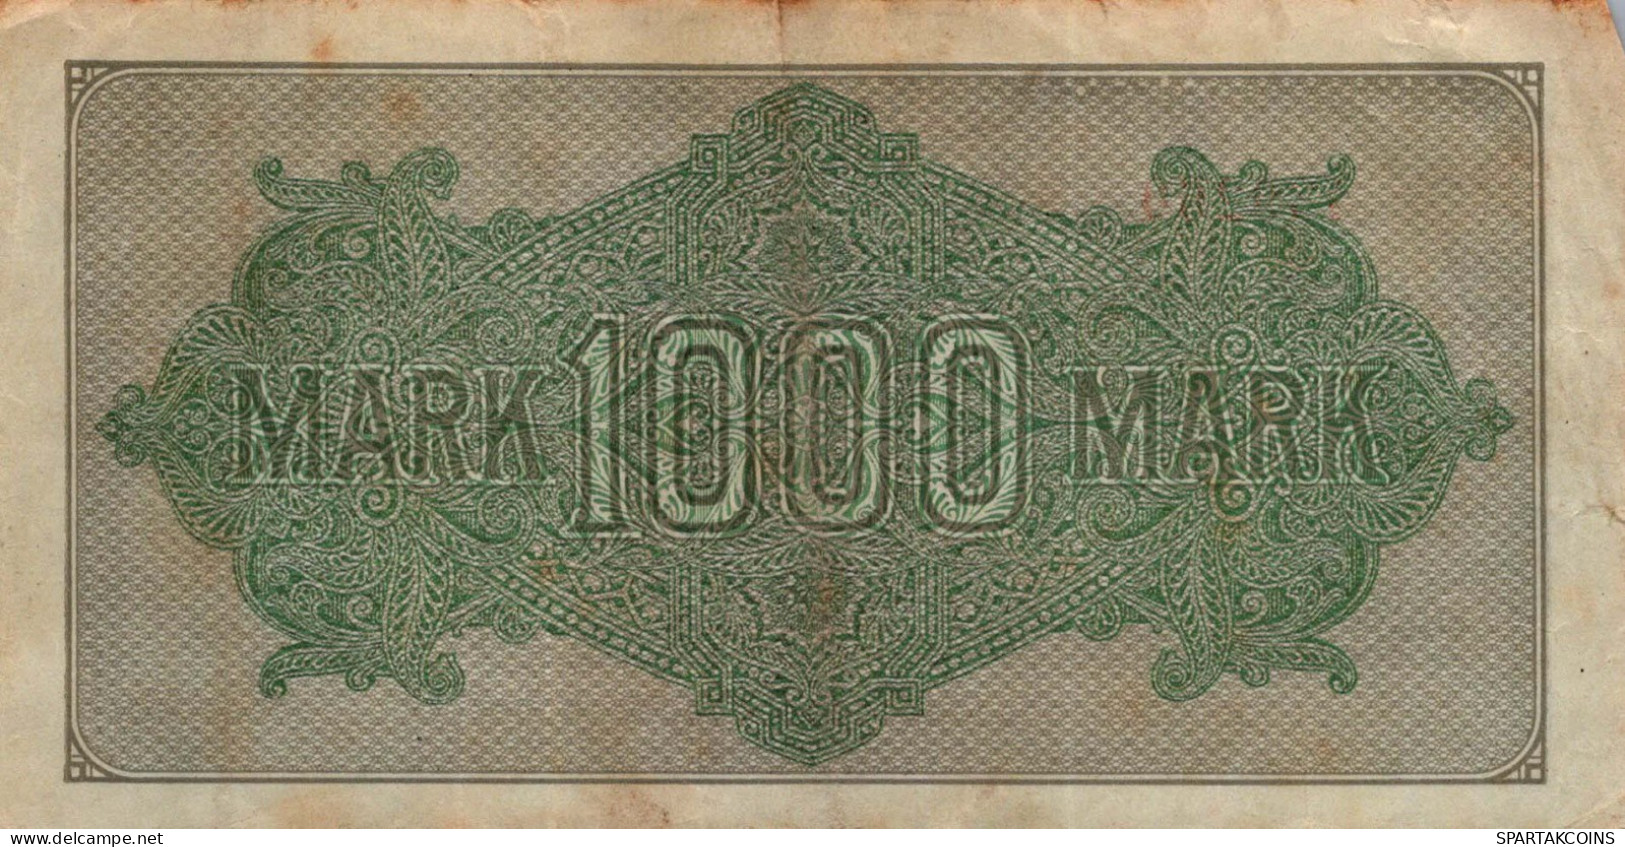 1000 MARK 1922 Stadt BERLIN DEUTSCHLAND Papiergeld Banknote #PL028 - [11] Local Banknote Issues